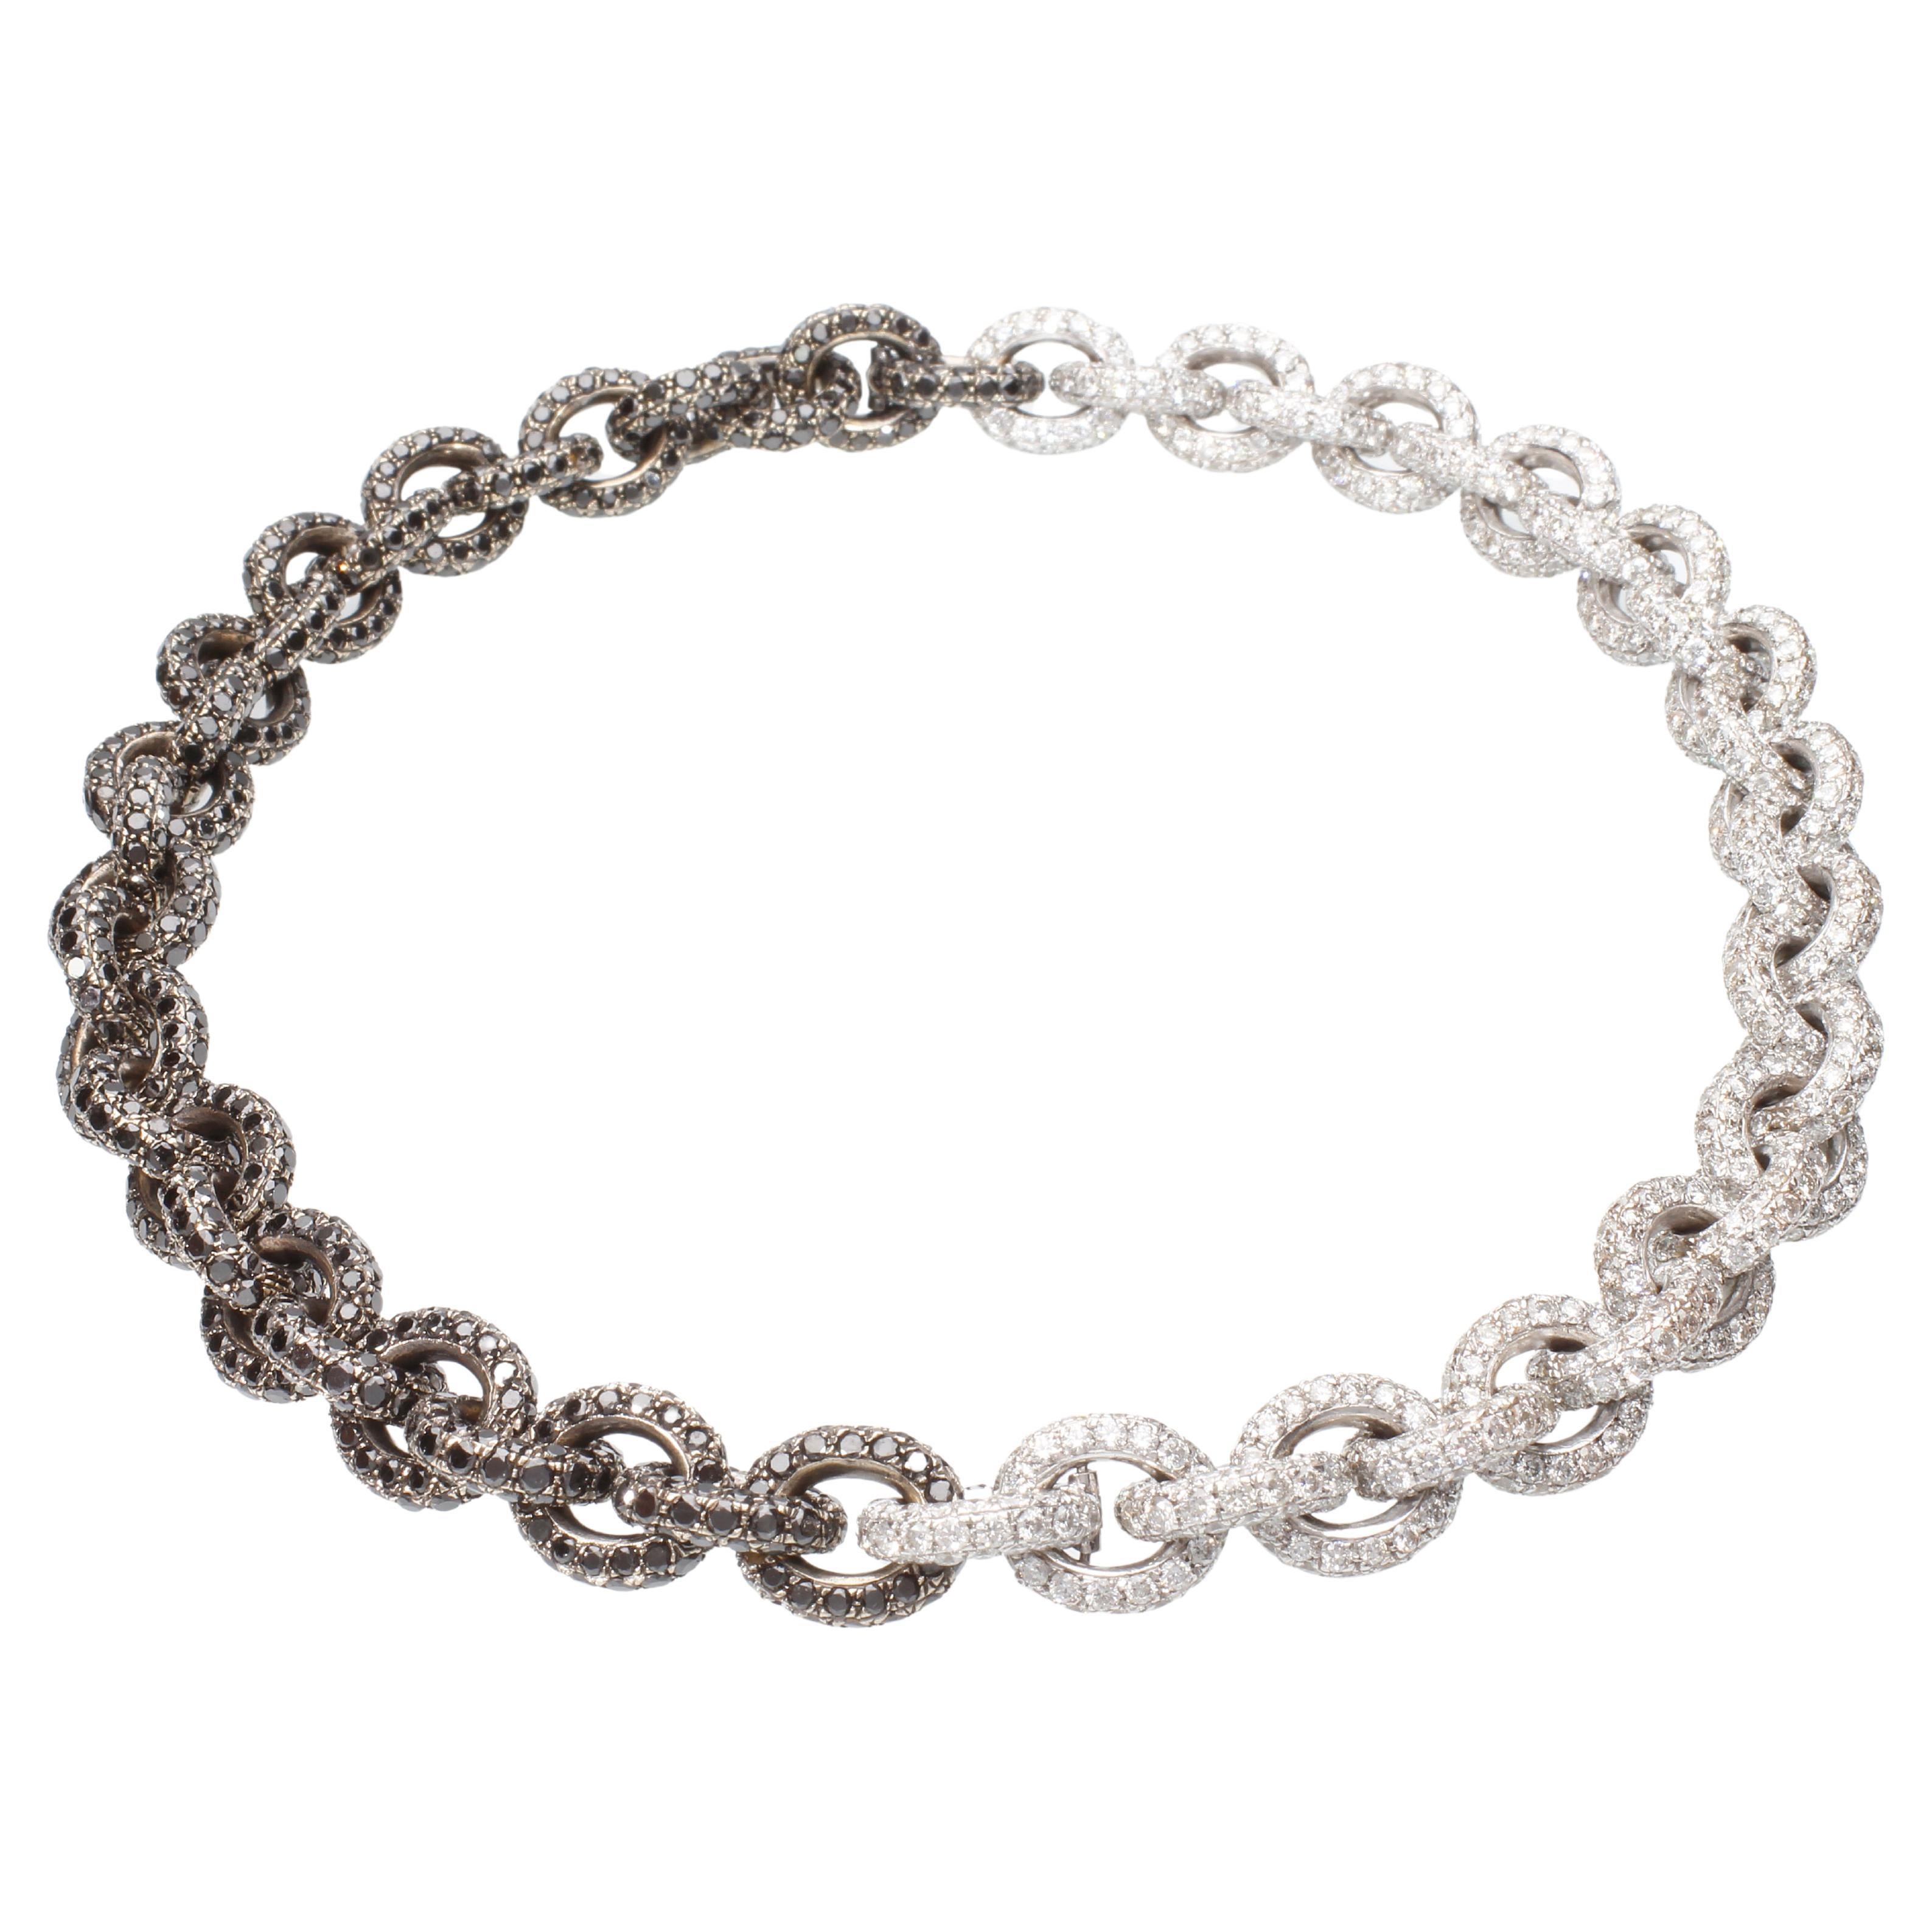 Chaîne collier/bracelet avec 64,26 carats de diamants blancs et noirs. Fait à la main.